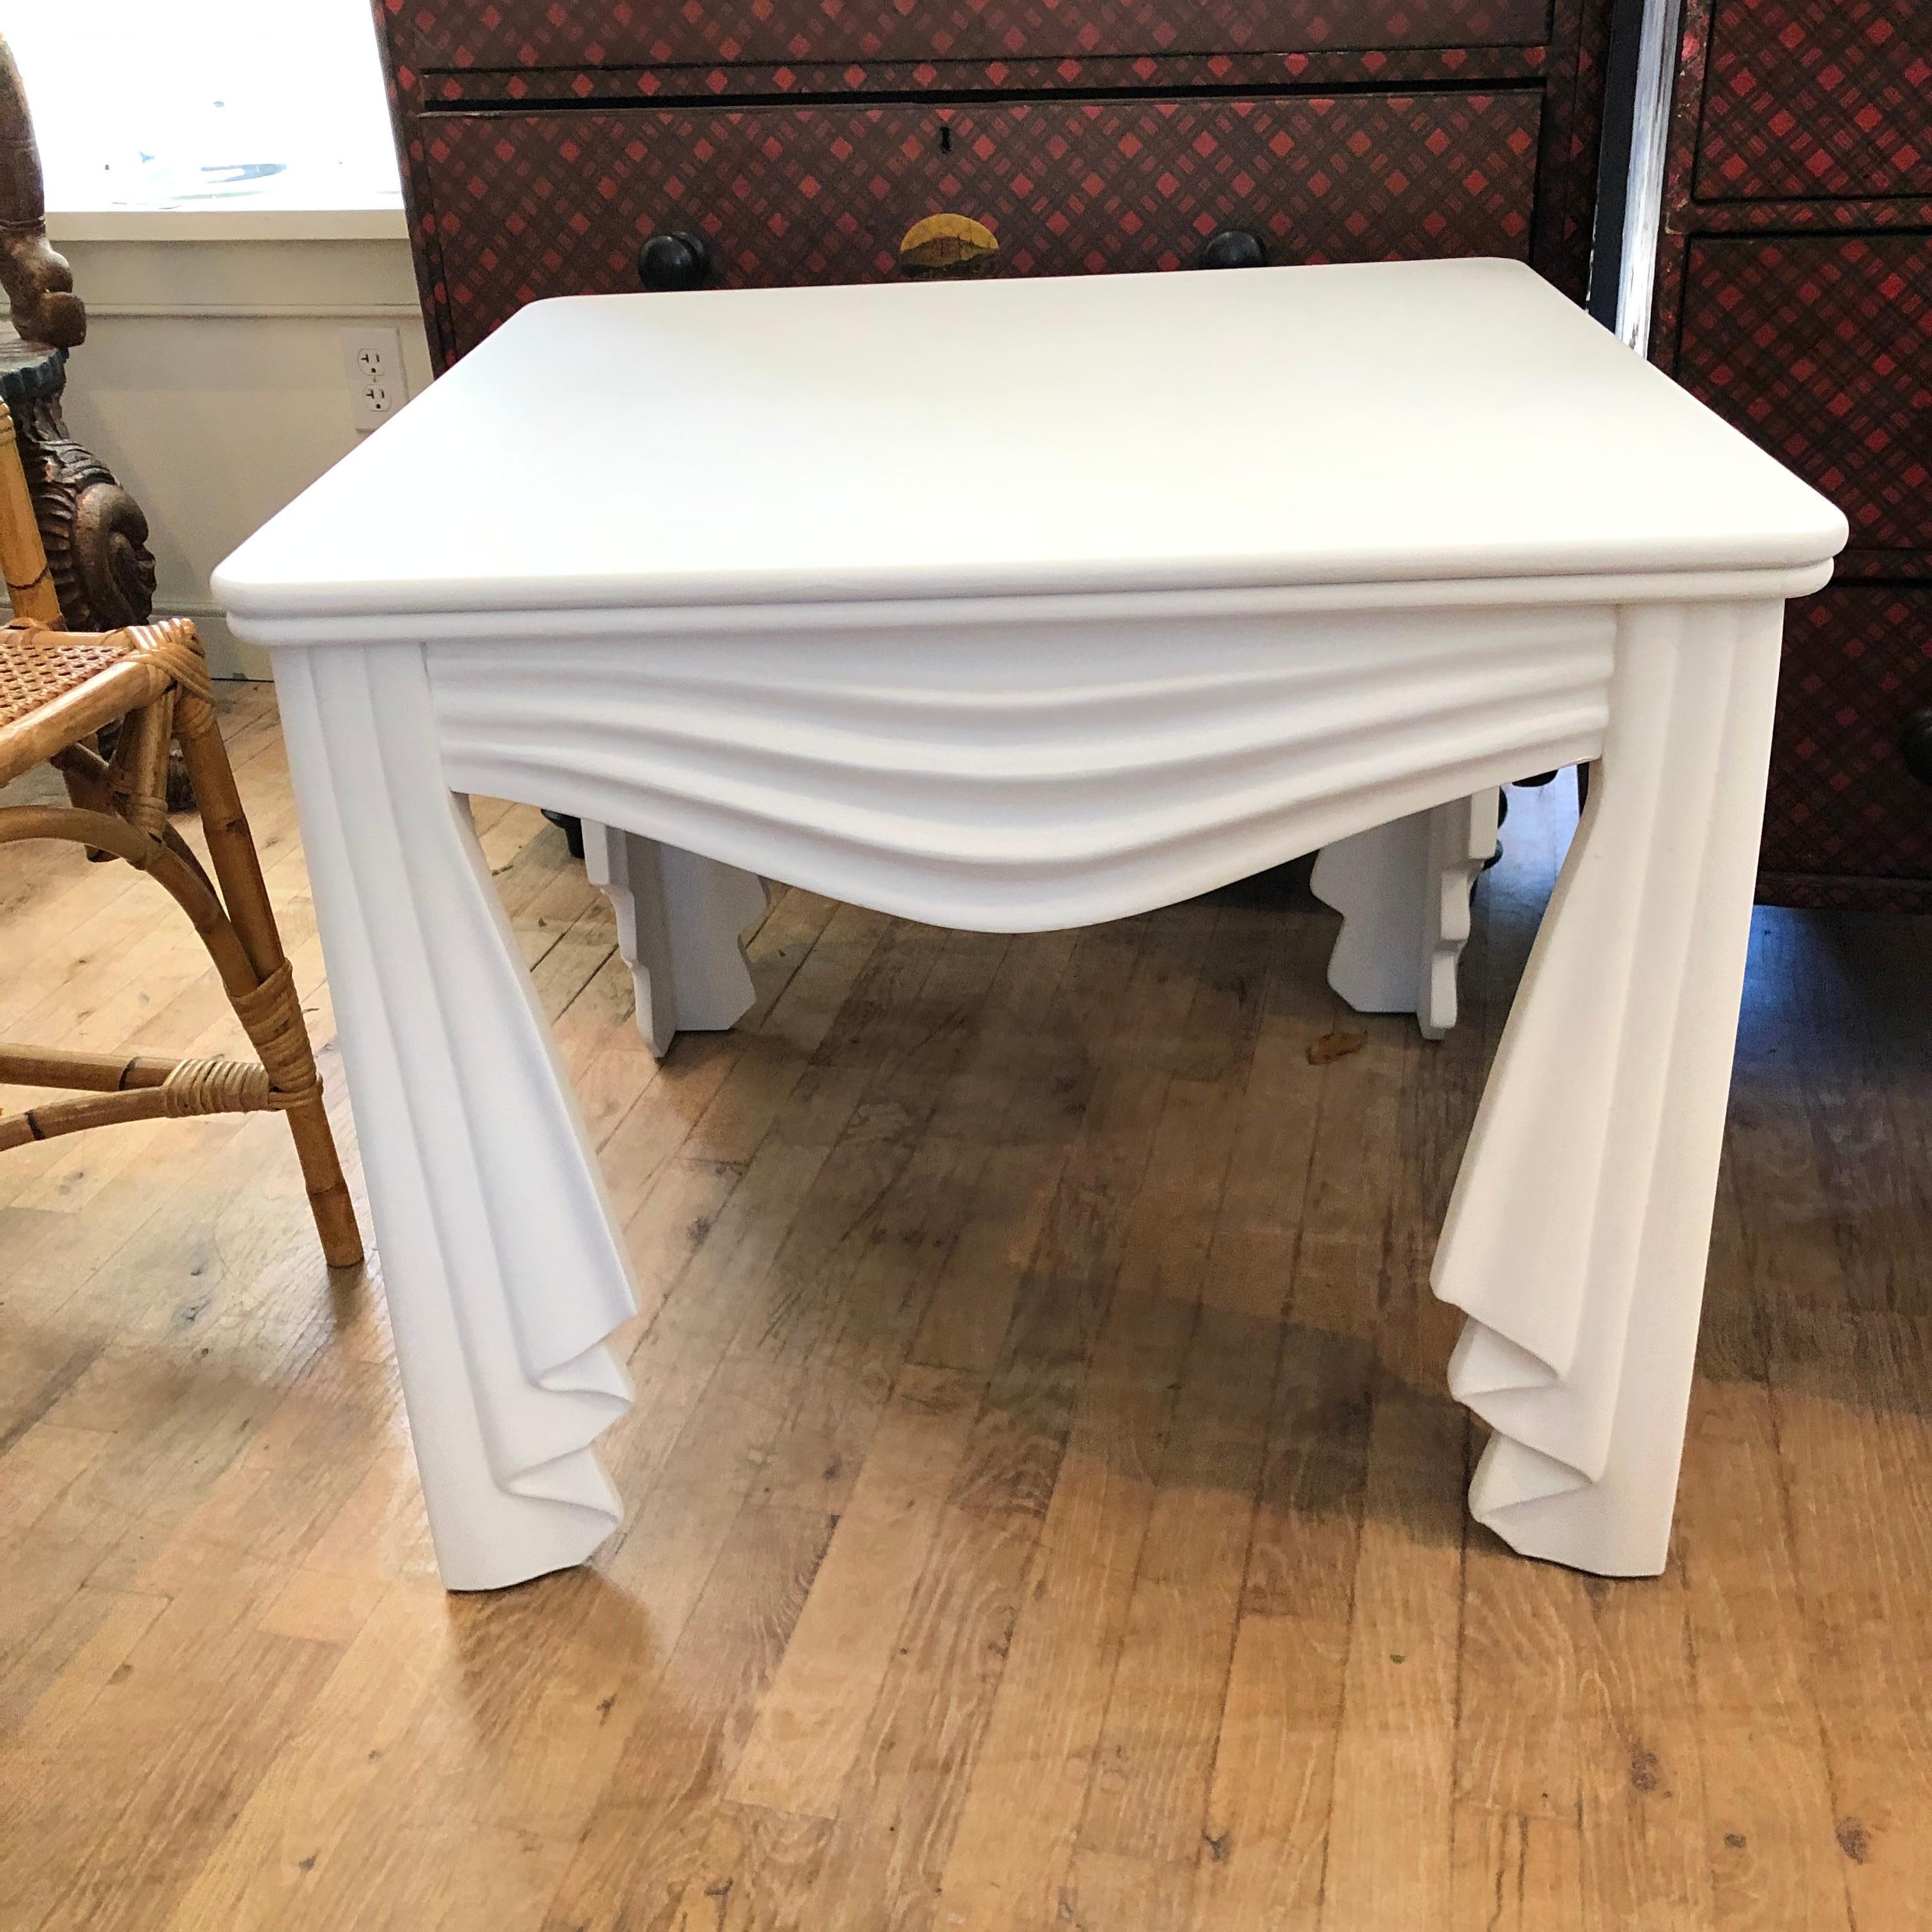 Magnifique table en bois sculpté drapée de faux tissus et nouvellement peinte en blanc plat ... dans le style de John Dickinson ....